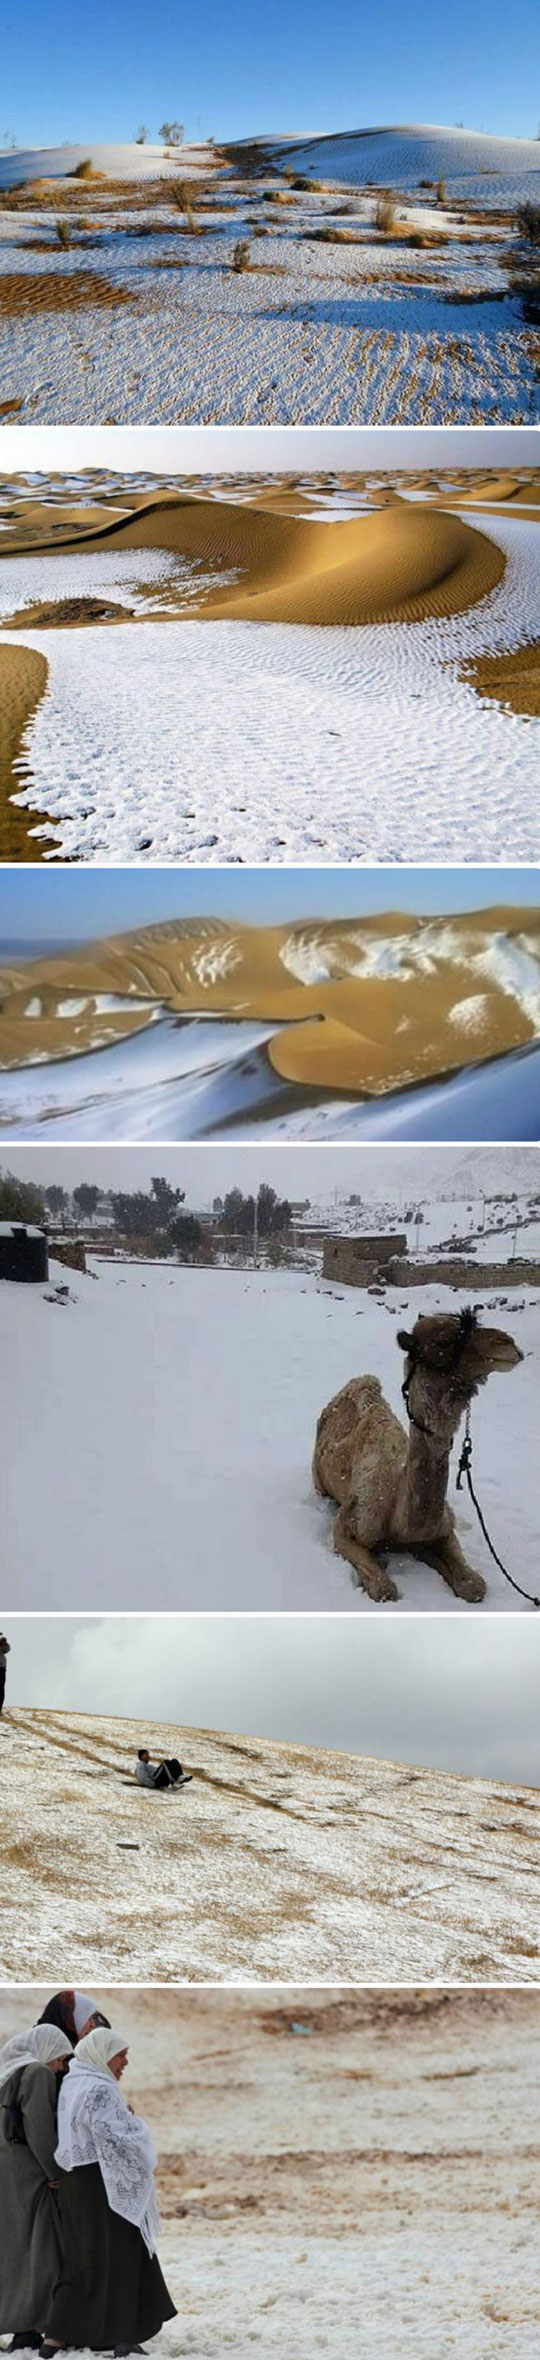 Snow in the Algerian Sahara